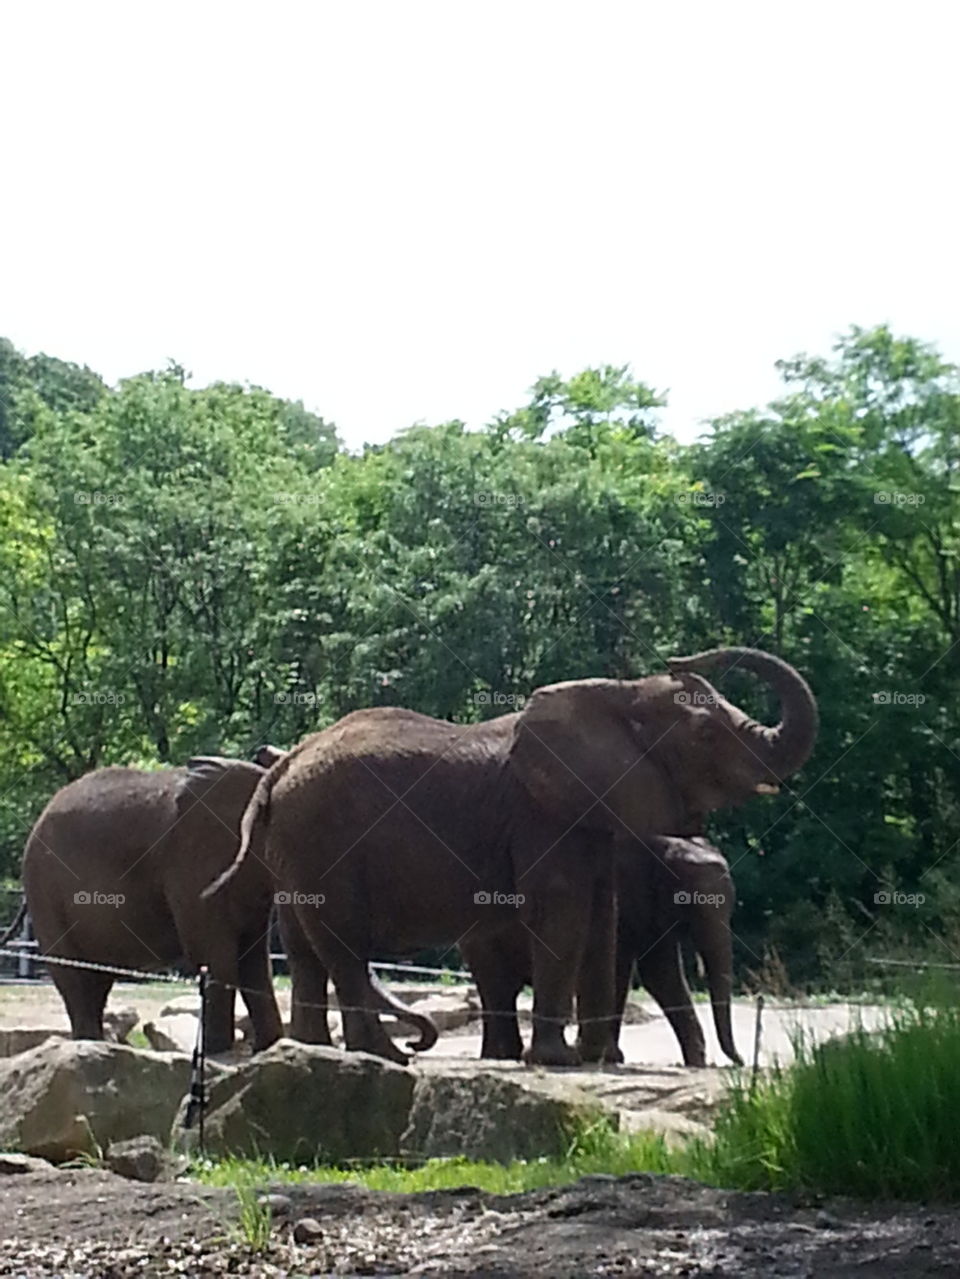 Pittsburgh Zoo's Elephants